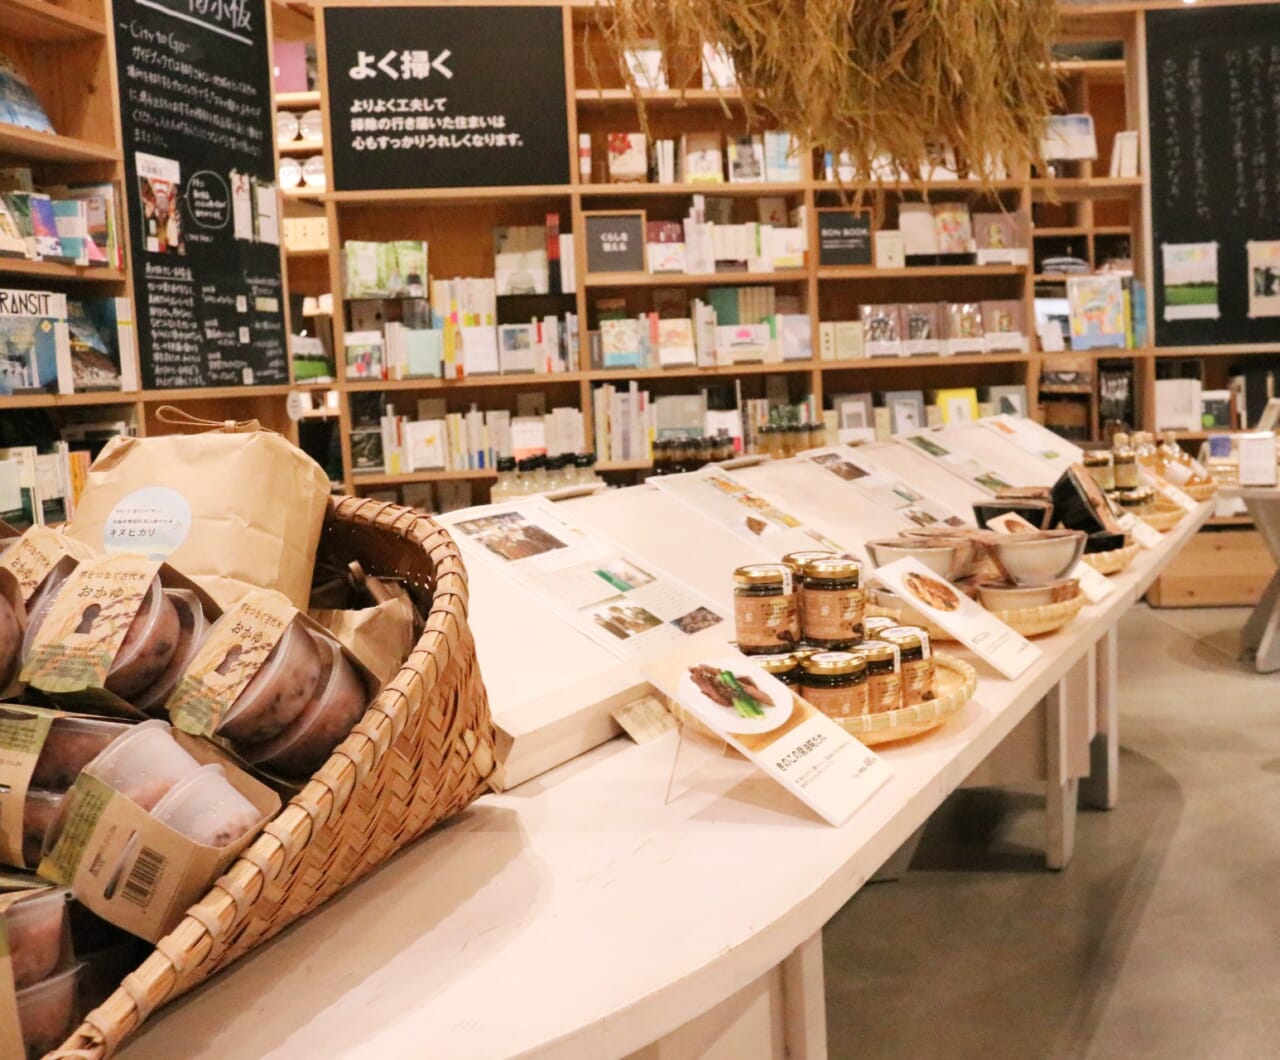 「無印良品 イオンモール堺北花田店」では地区限定商品専用コーナーが設けられている。